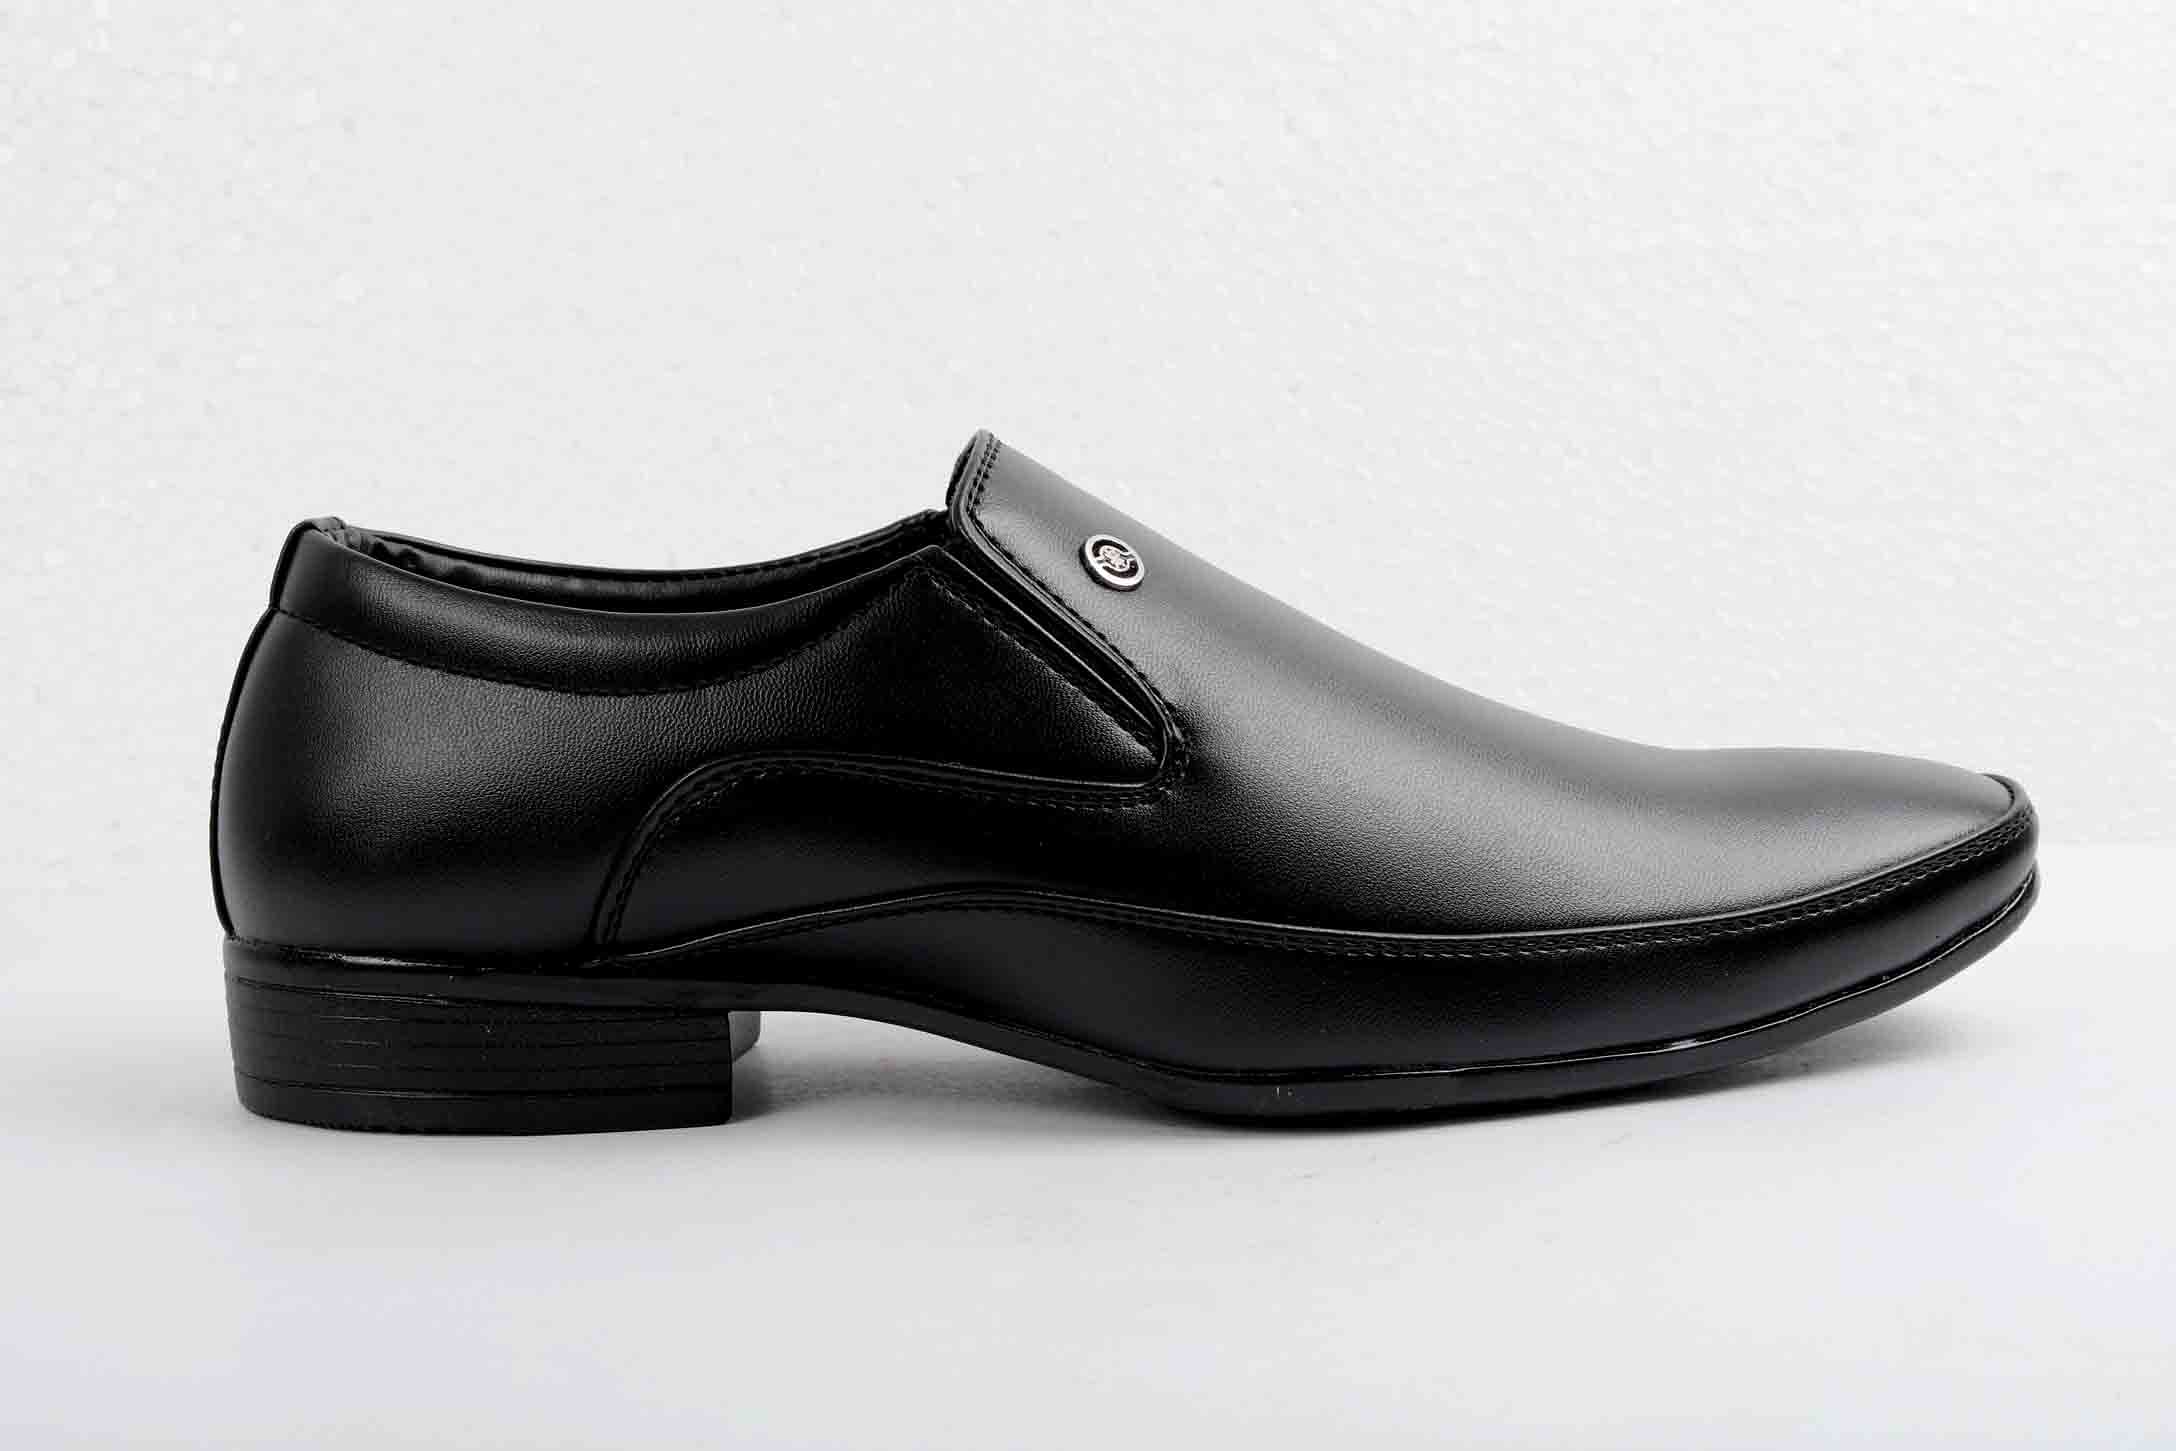 Pair-it Men moccasin Formal Shoes - Black-MN-RYDER208